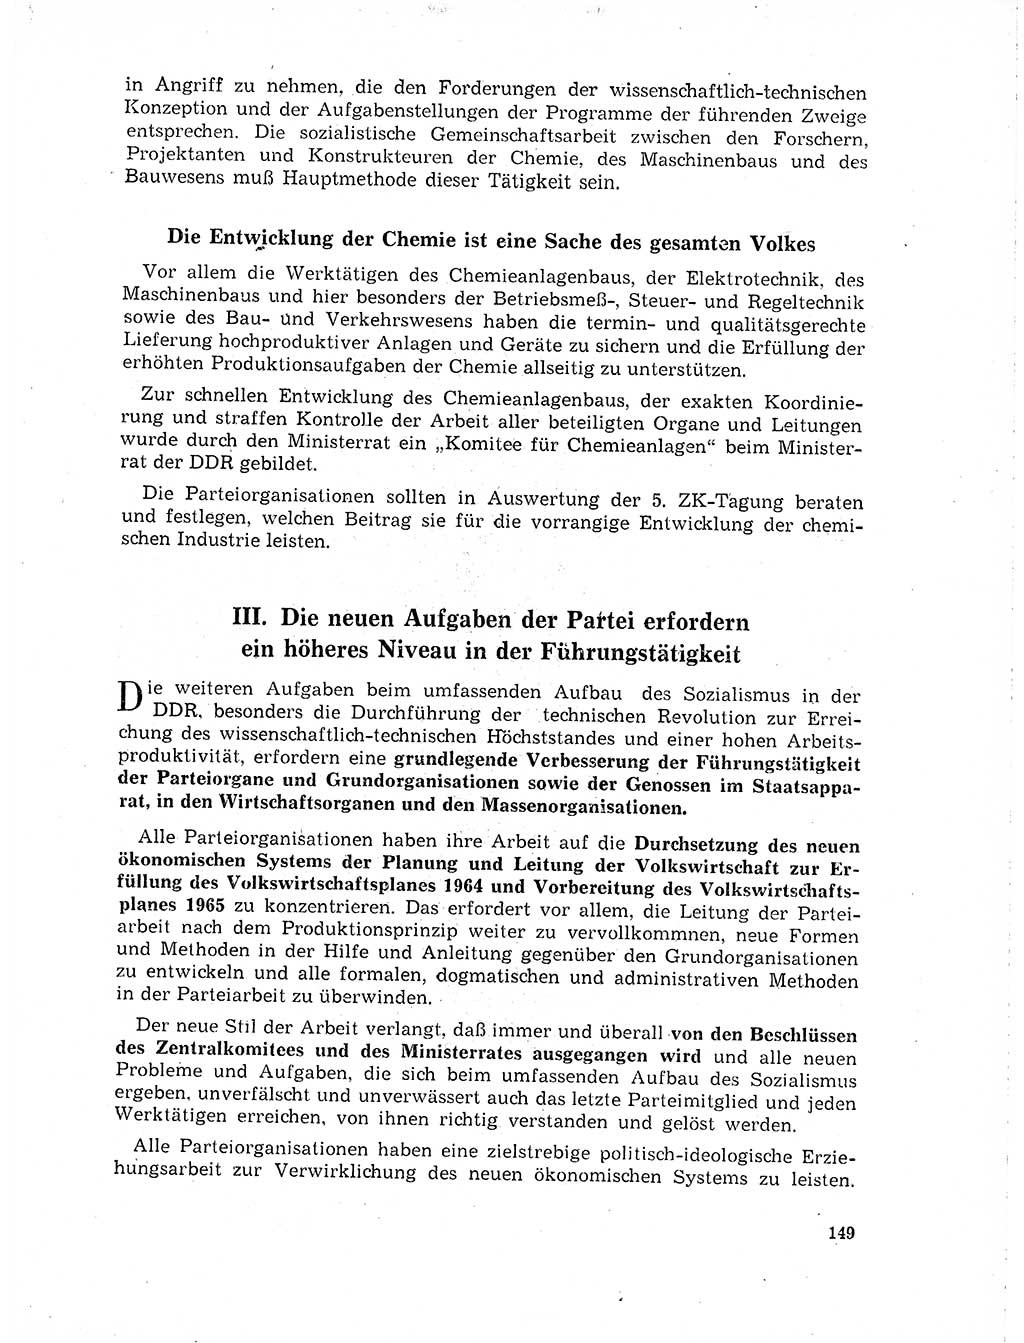 Neuer Weg (NW), Organ des Zentralkomitees (ZK) der SED (Sozialistische Einheitspartei Deutschlands) für Fragen des Parteilebens, 19. Jahrgang [Deutsche Demokratische Republik (DDR)] 1964, Seite 149 (NW ZK SED DDR 1964, S. 149)